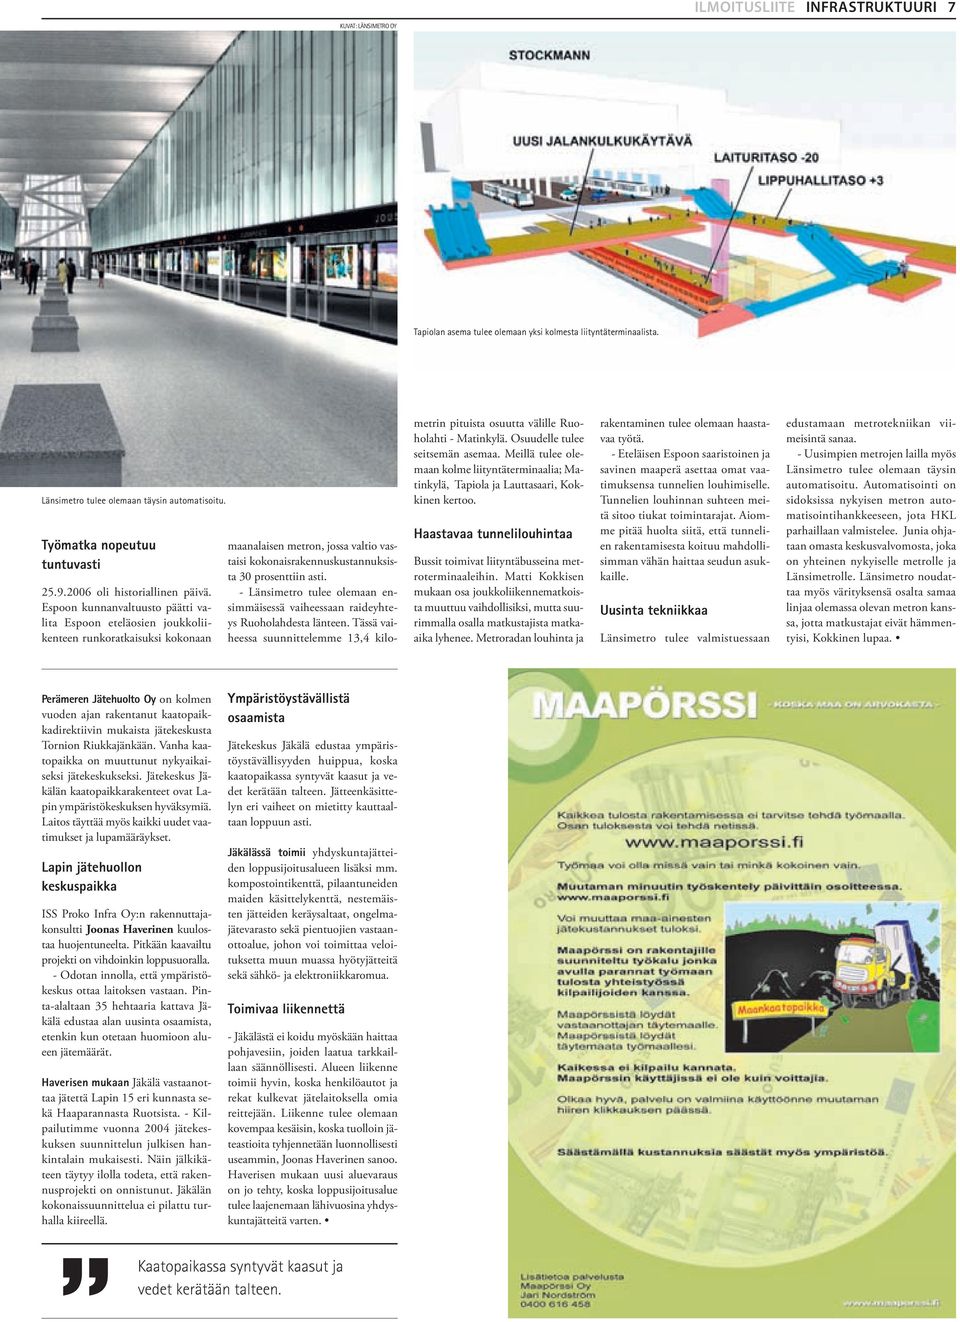 Espoon kunnanvaltuusto päätti valita Espoon eteläosien joukkoliikenteen runkoratkaisuksi kokonaan maanalaisen metron, jossa valtio vastaisi kokonaisrakennuskustannuksista 30 prosenttiin asti.